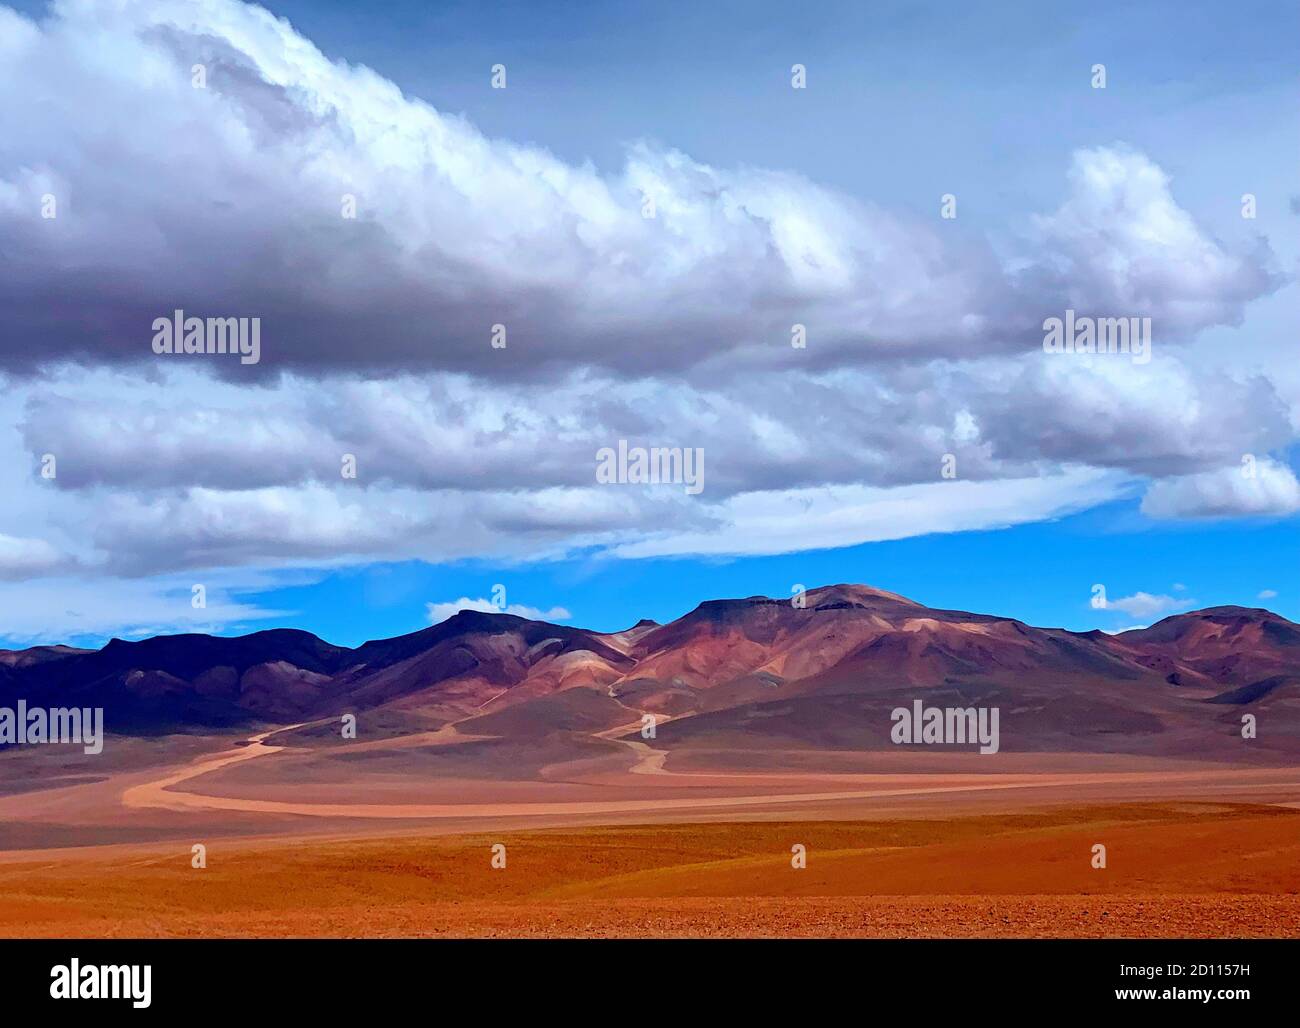 Montagne vulcaniche andine colorate nel deserto arido Atacama, natura selvaggia impressionante, paesaggio montano impressionante, paesaggio panoramico nuvoloso in cielo Foto Stock